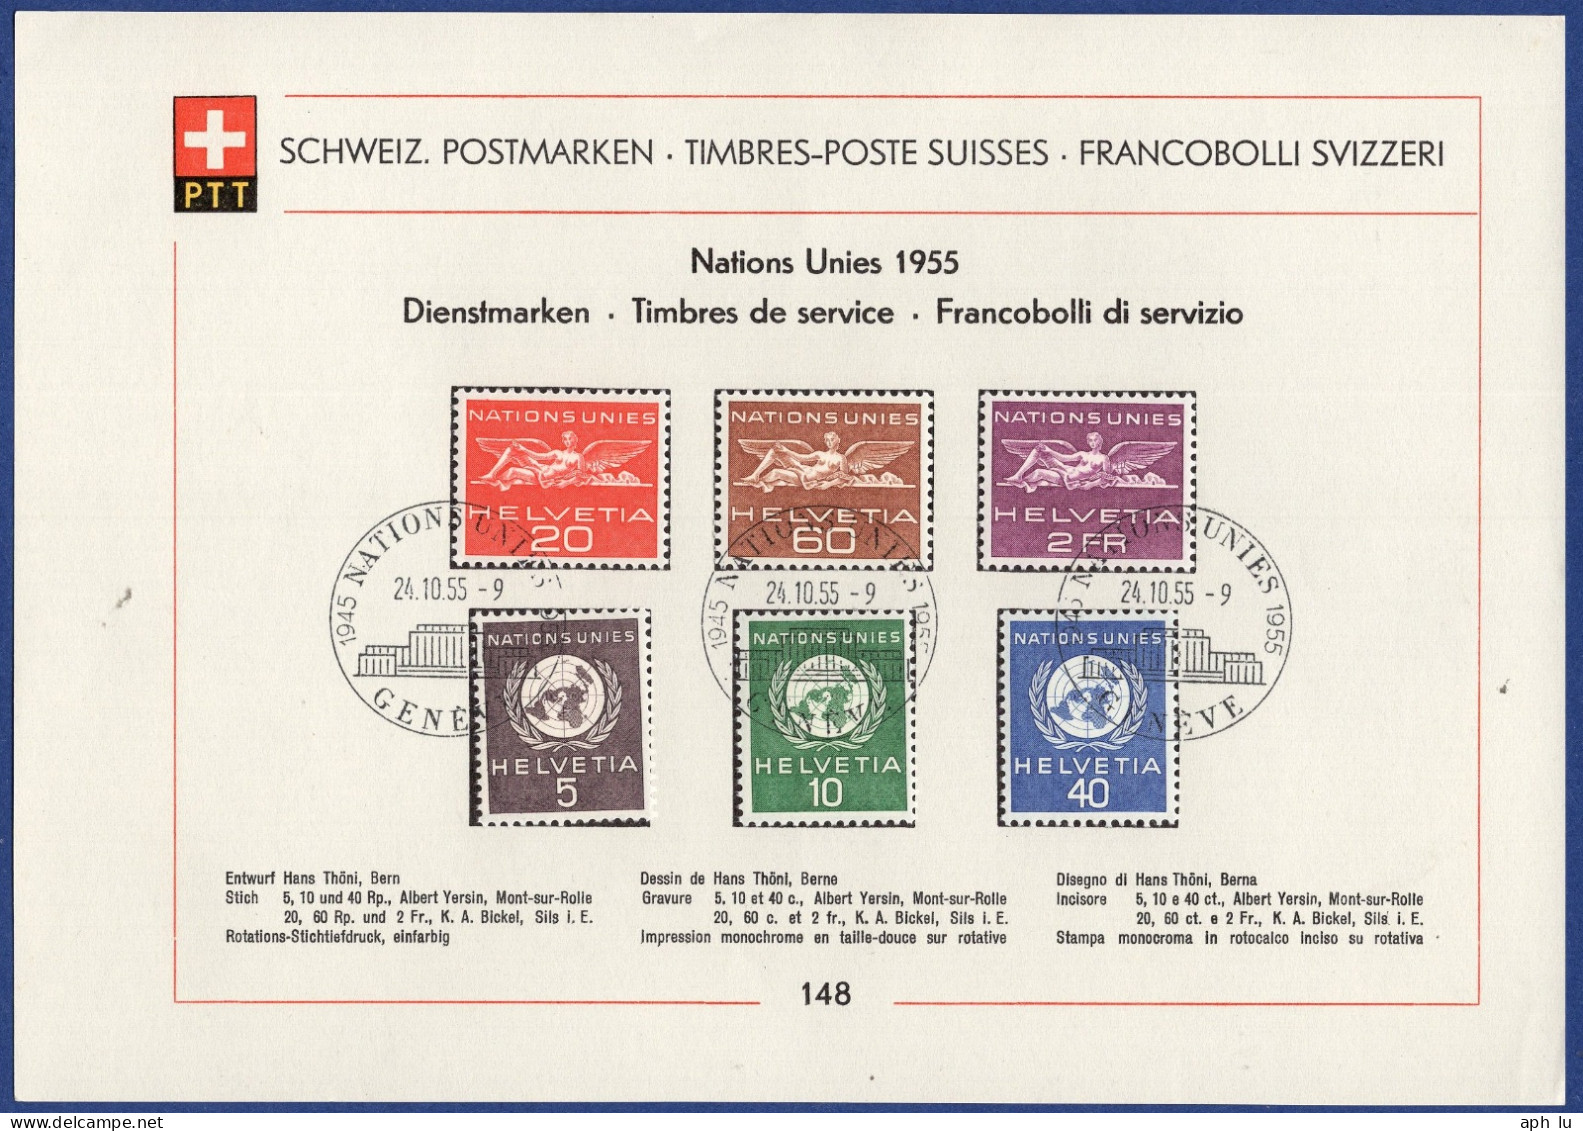 Nations Unies (DDD076) - Dienstzegels